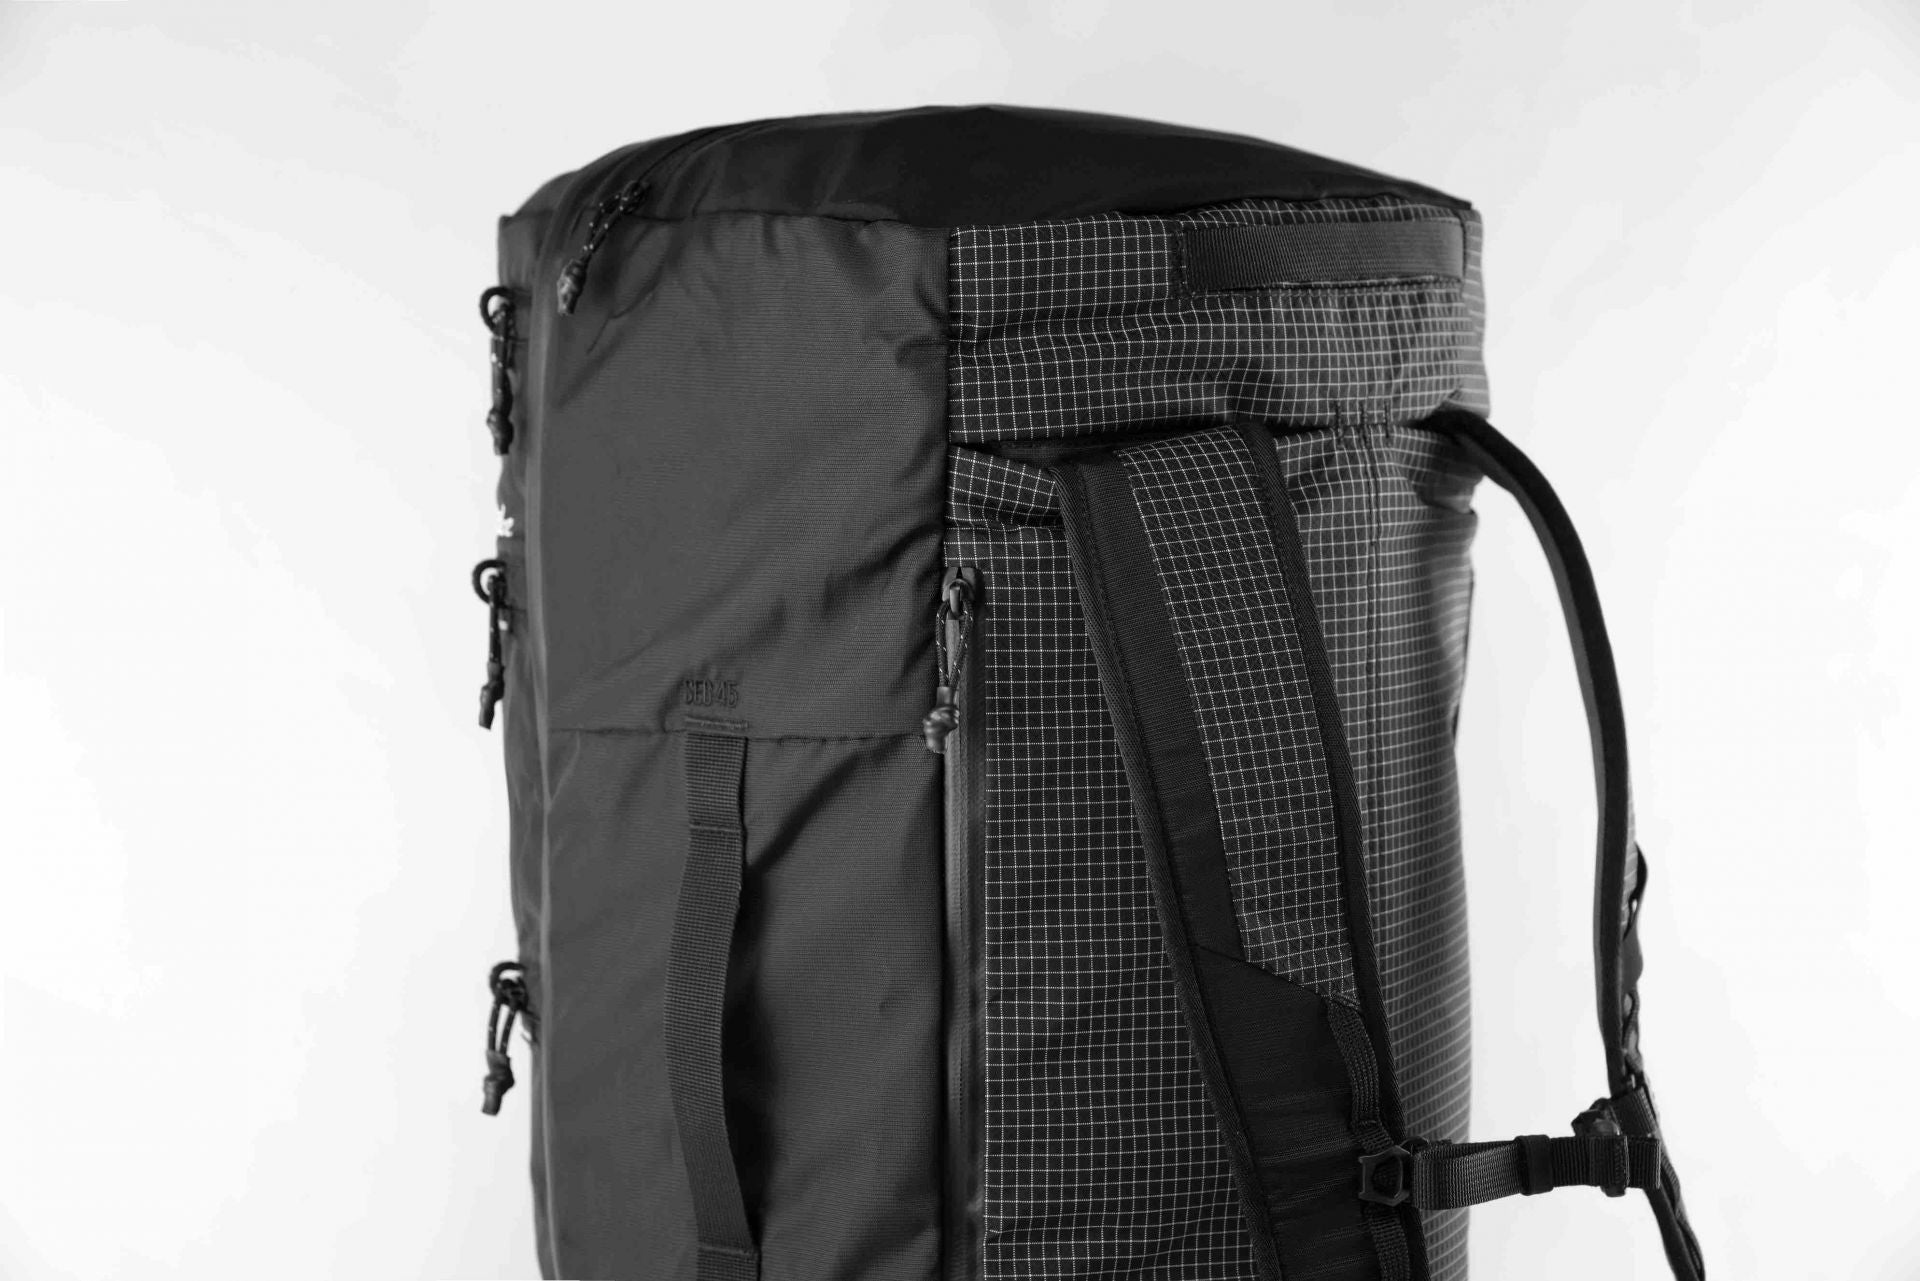 Matador SEG45 Travel Pack- robuster Rucksck mit segmentierten Taschen wie Würfel